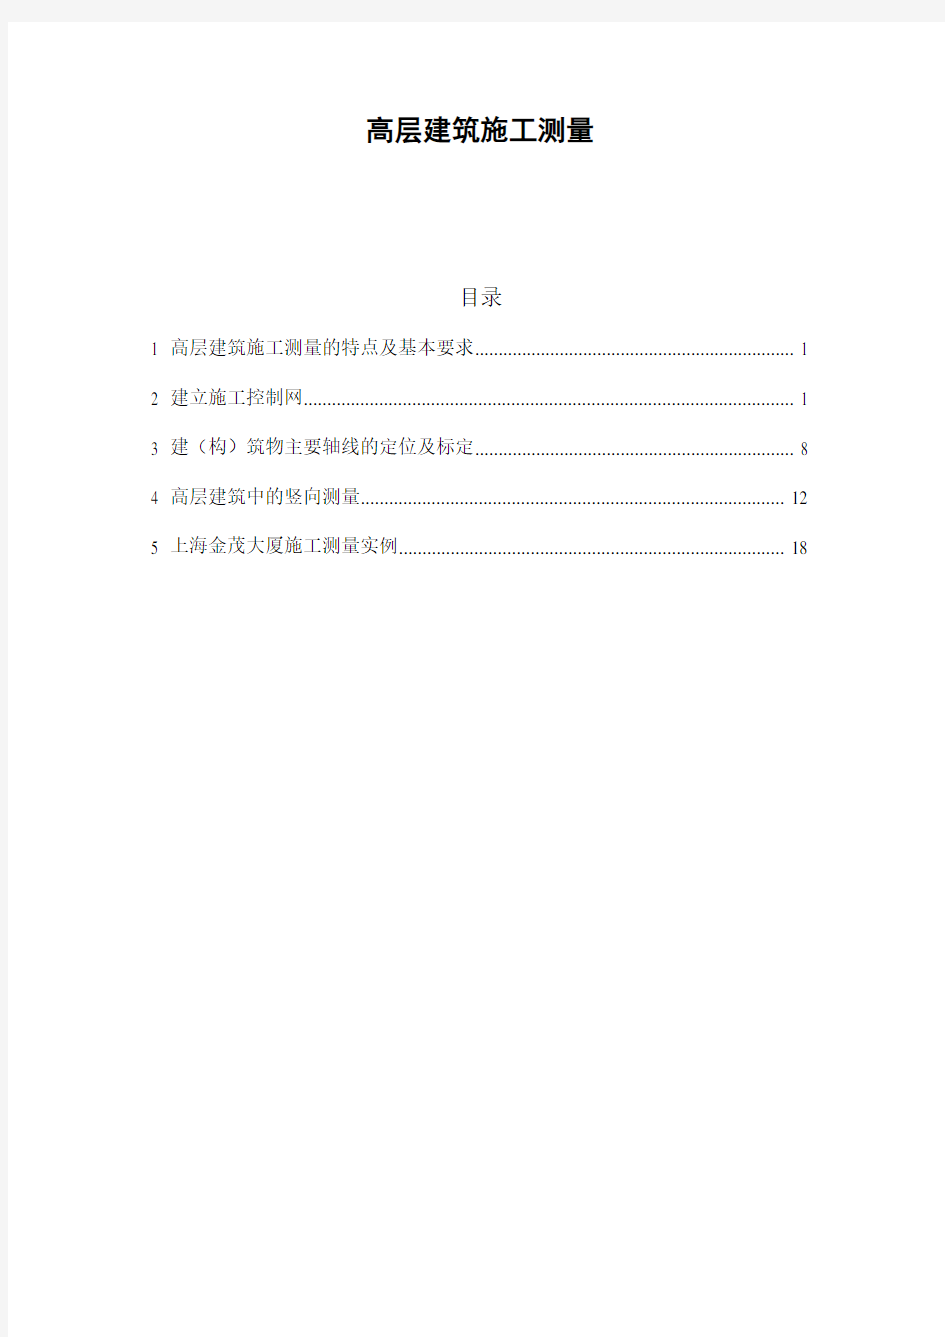 高层建筑施工测量(特点及基本要求、控制网、轴线定位、竖向测量、上海金茂大厦施工测量实例)